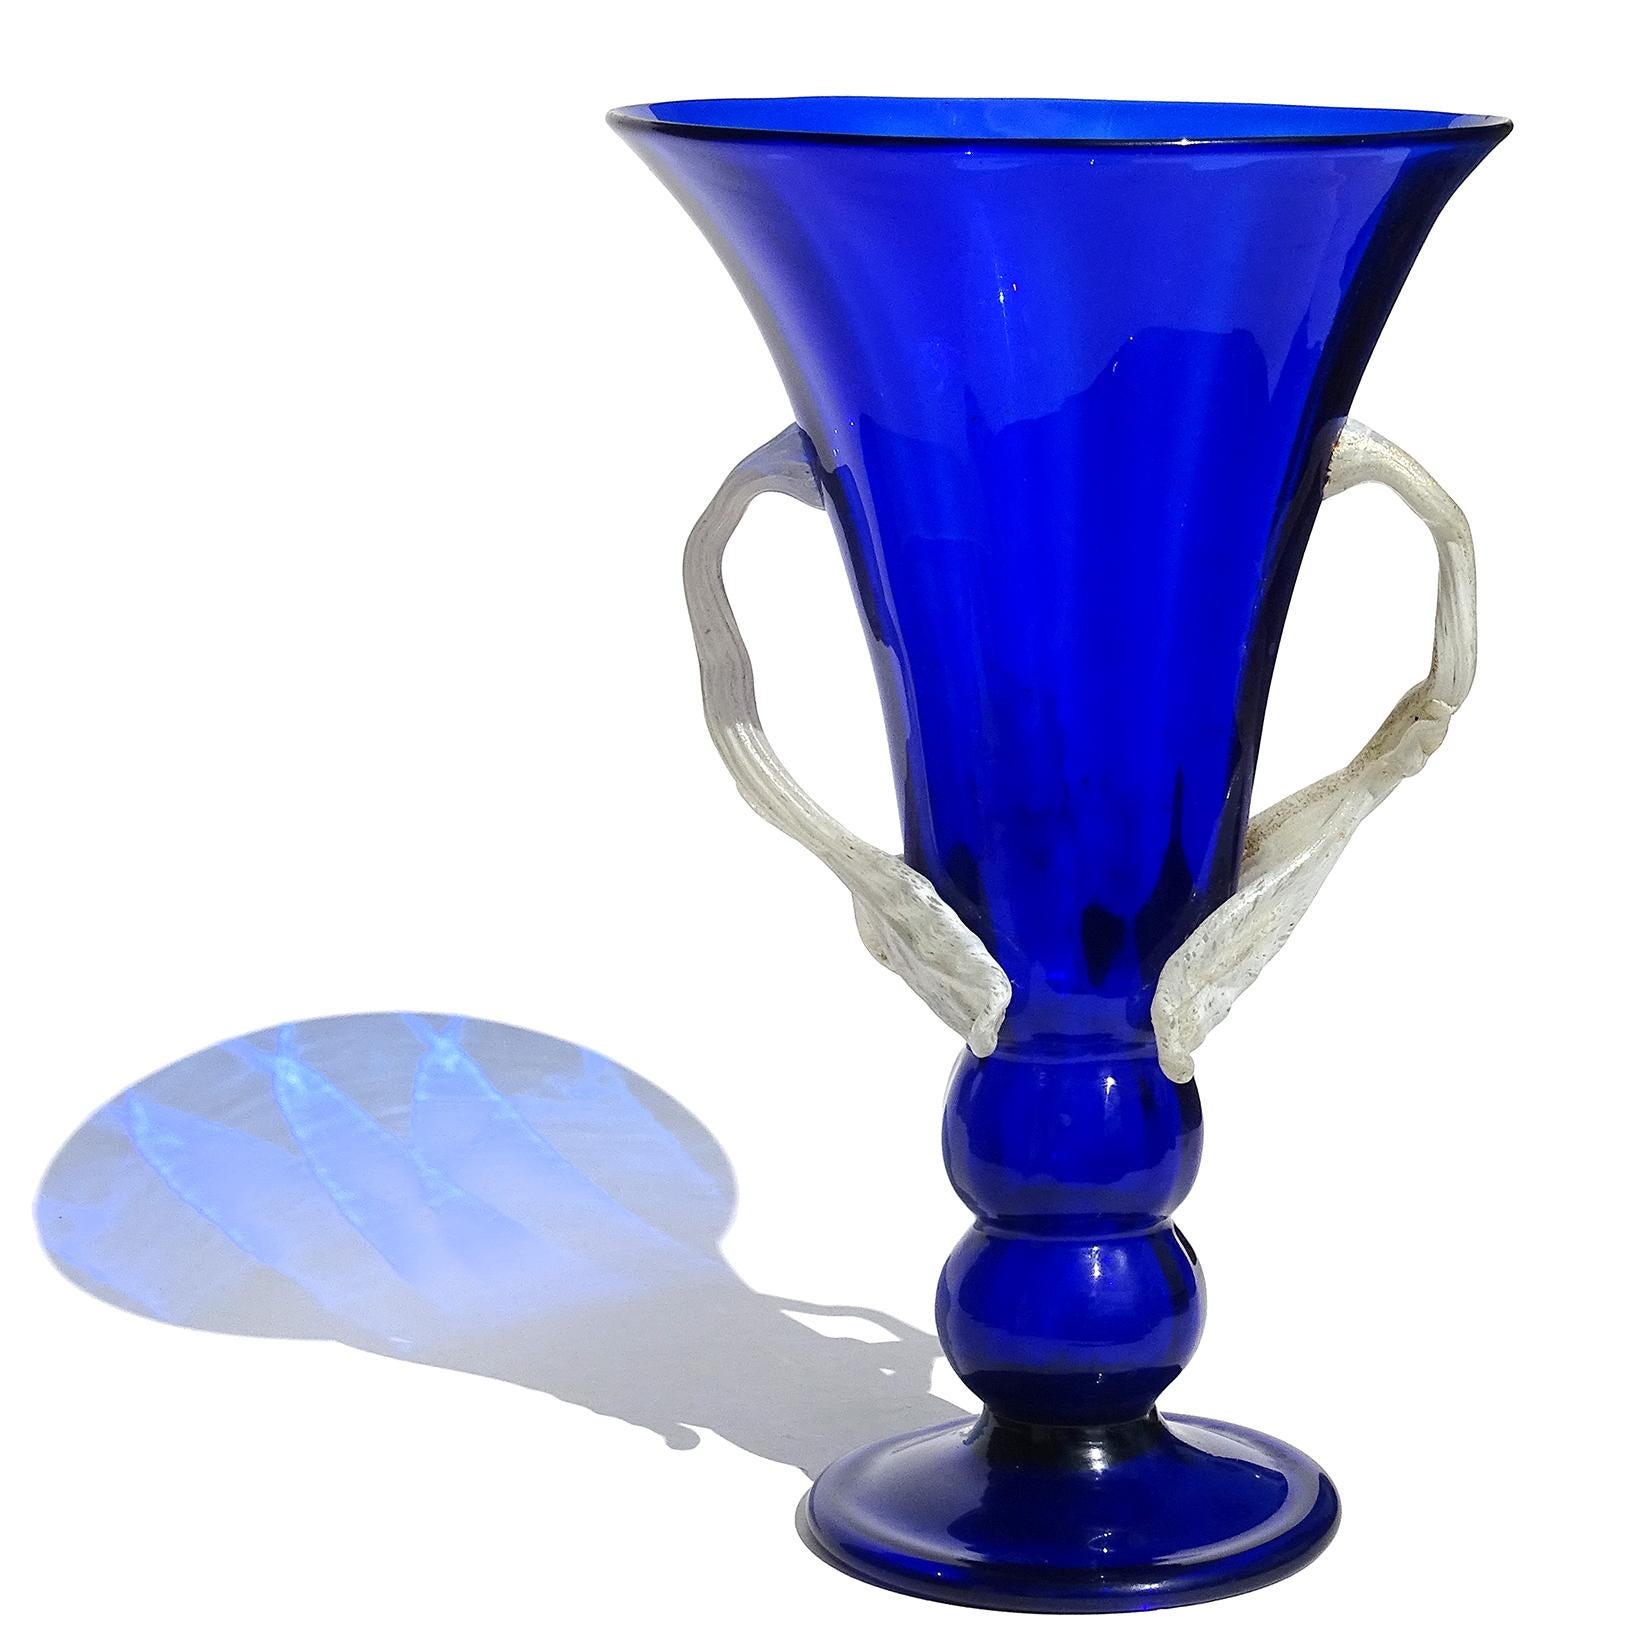 Magnifique vase à fleurs antique en verre d'art italien bleu cobalt soufflé à la main à Murano. Documenté à l'entreprise Artistica Soffiera Vetreria - Barovier Seguso Ferro. L'entreprise n'a fonctionné que pendant 4 ans (1933-1937), avant de devenir